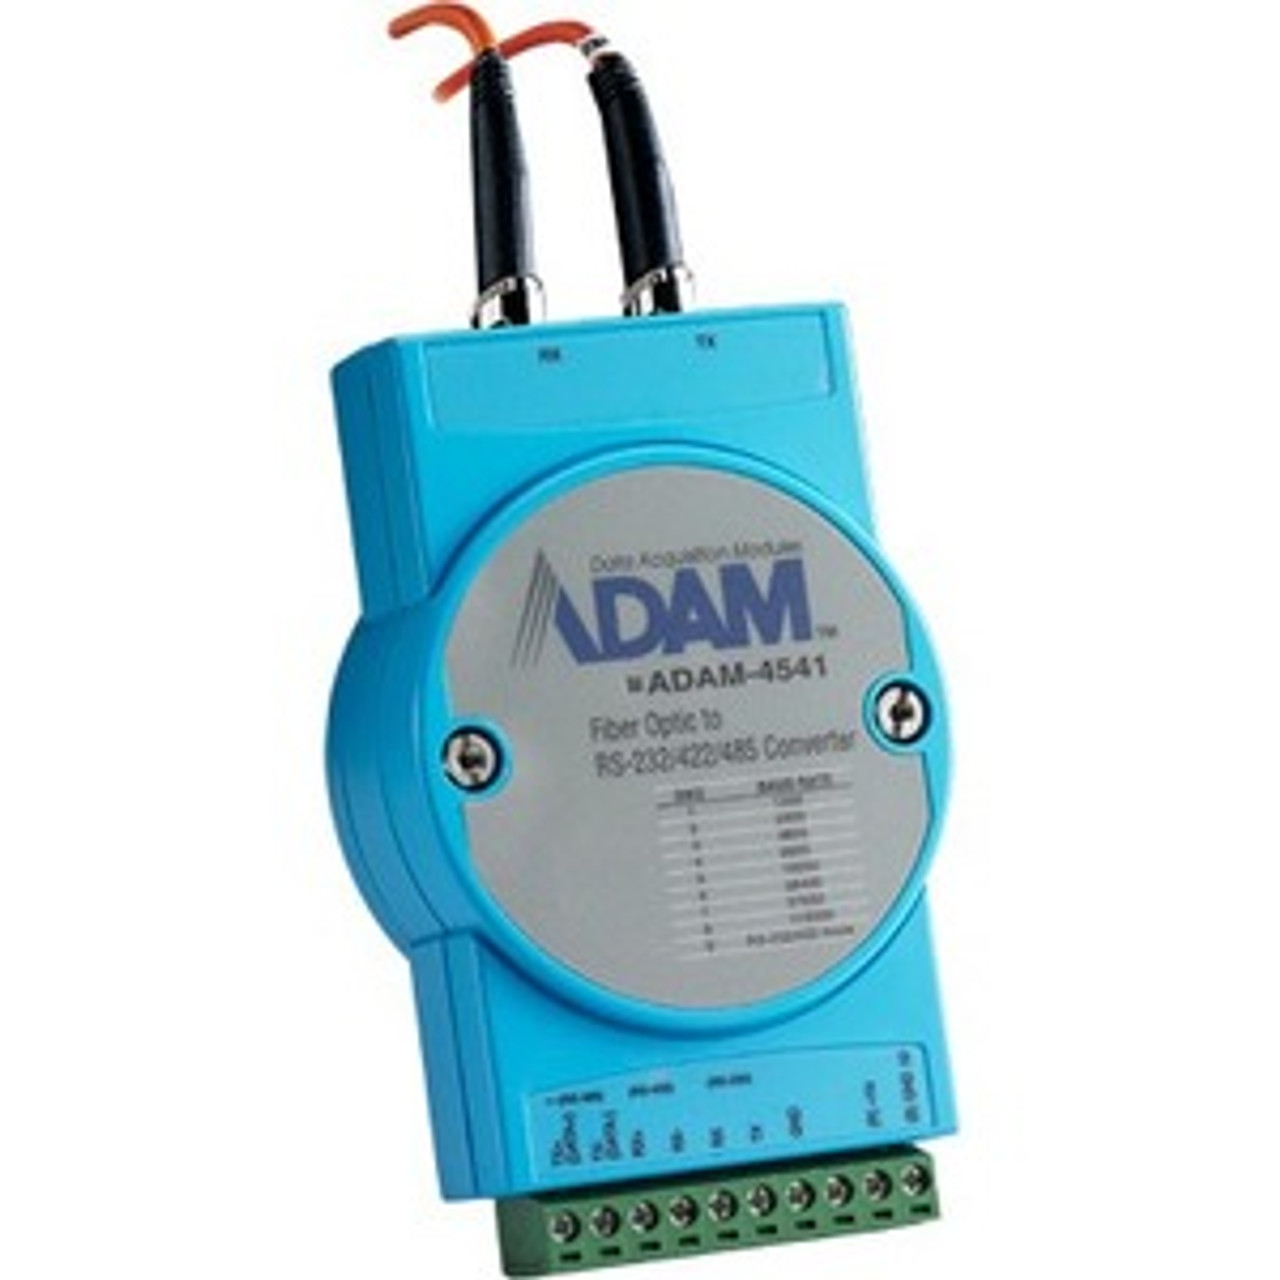 Advantech ADAM-4541